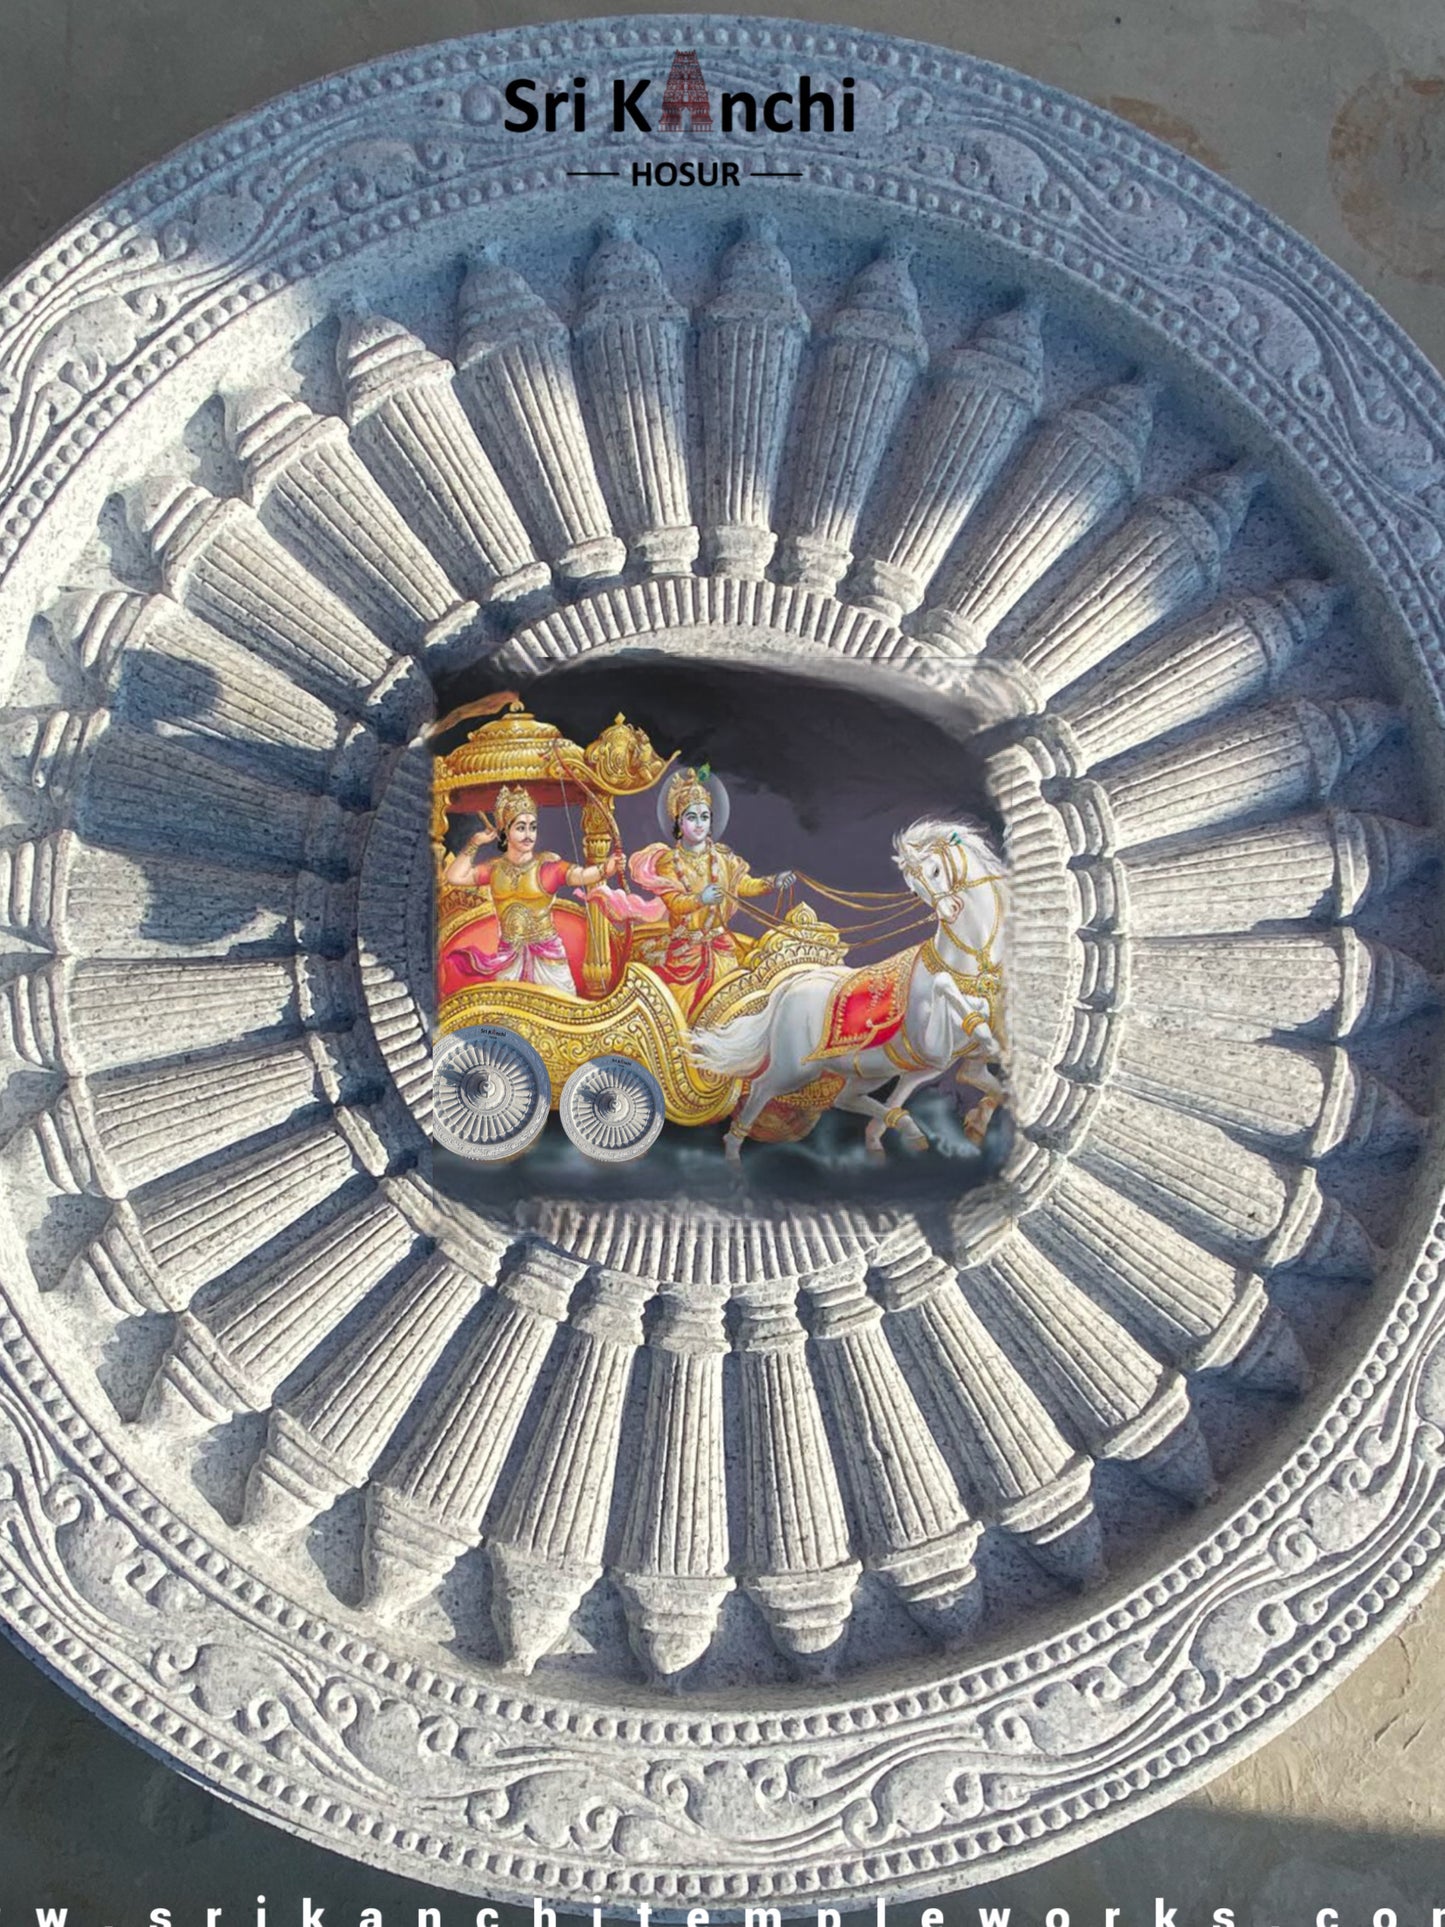 Sri Krishna’s Chariot Stone Wheels